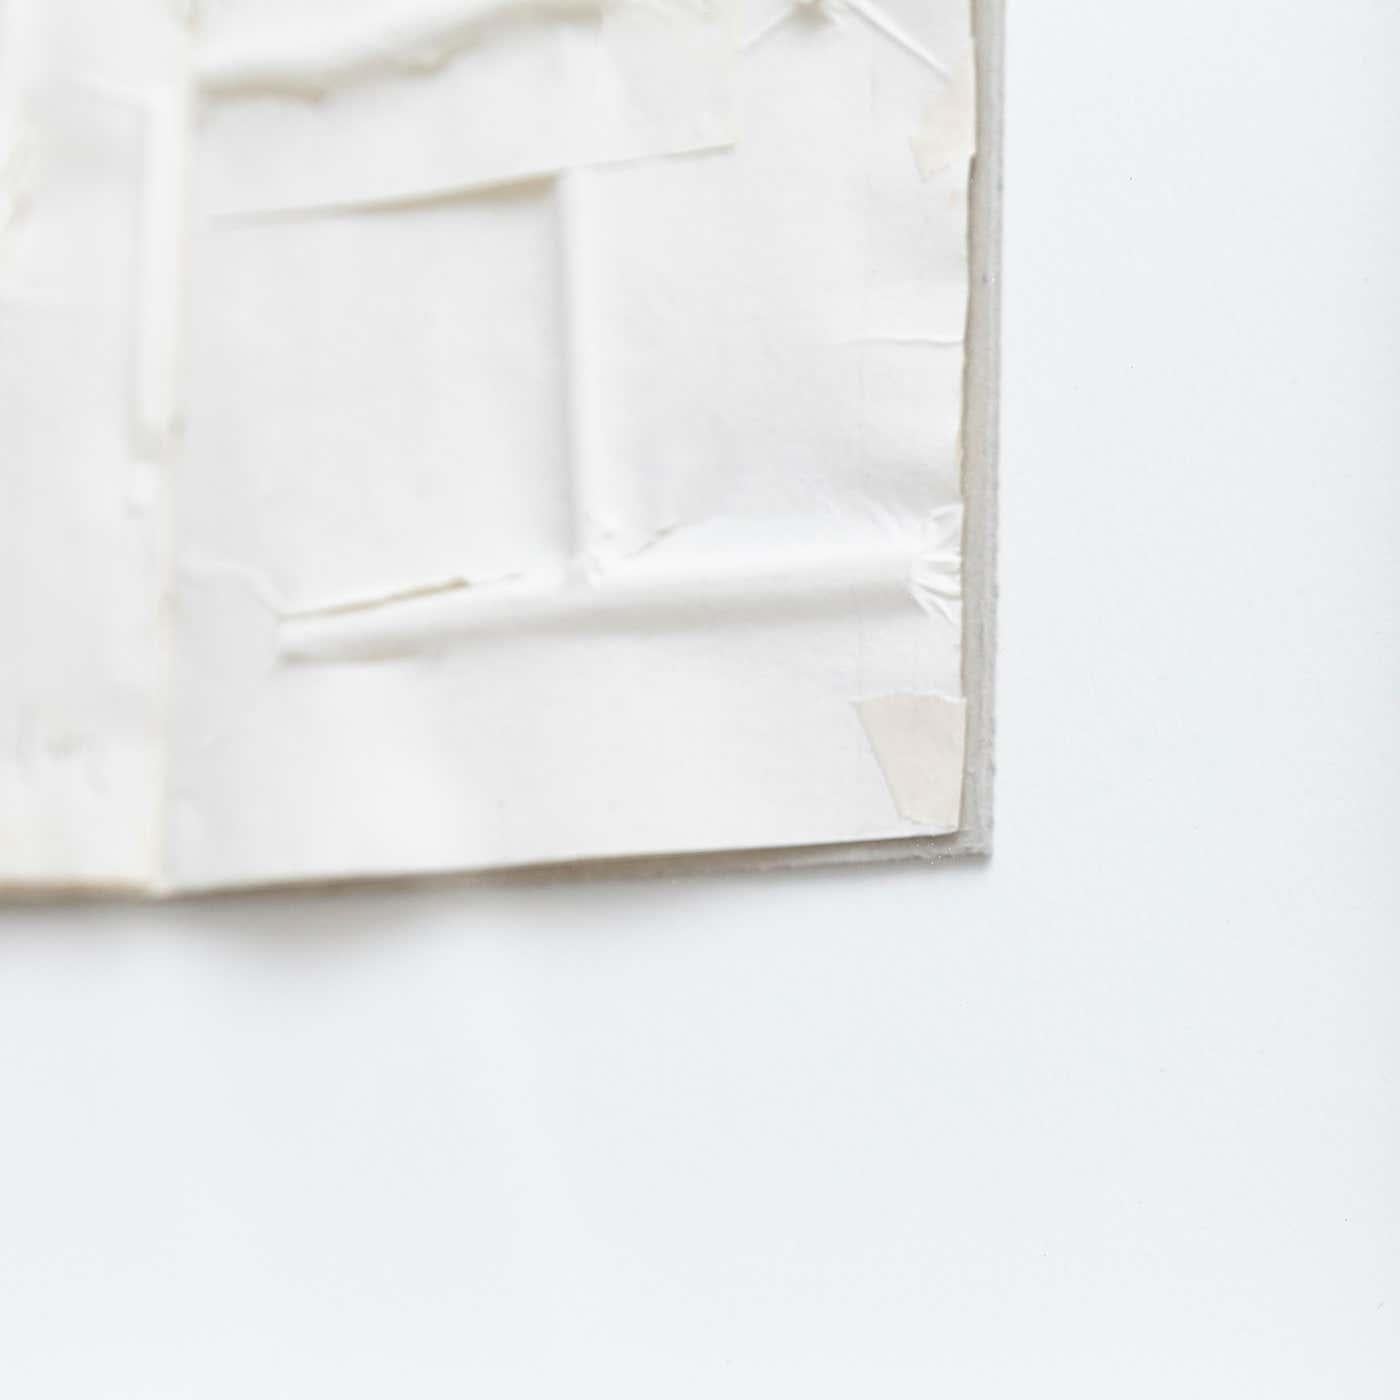 Jordi Alcaraz Contemporary Abstract Minimalist White Artwork, 2019 For Sale 1